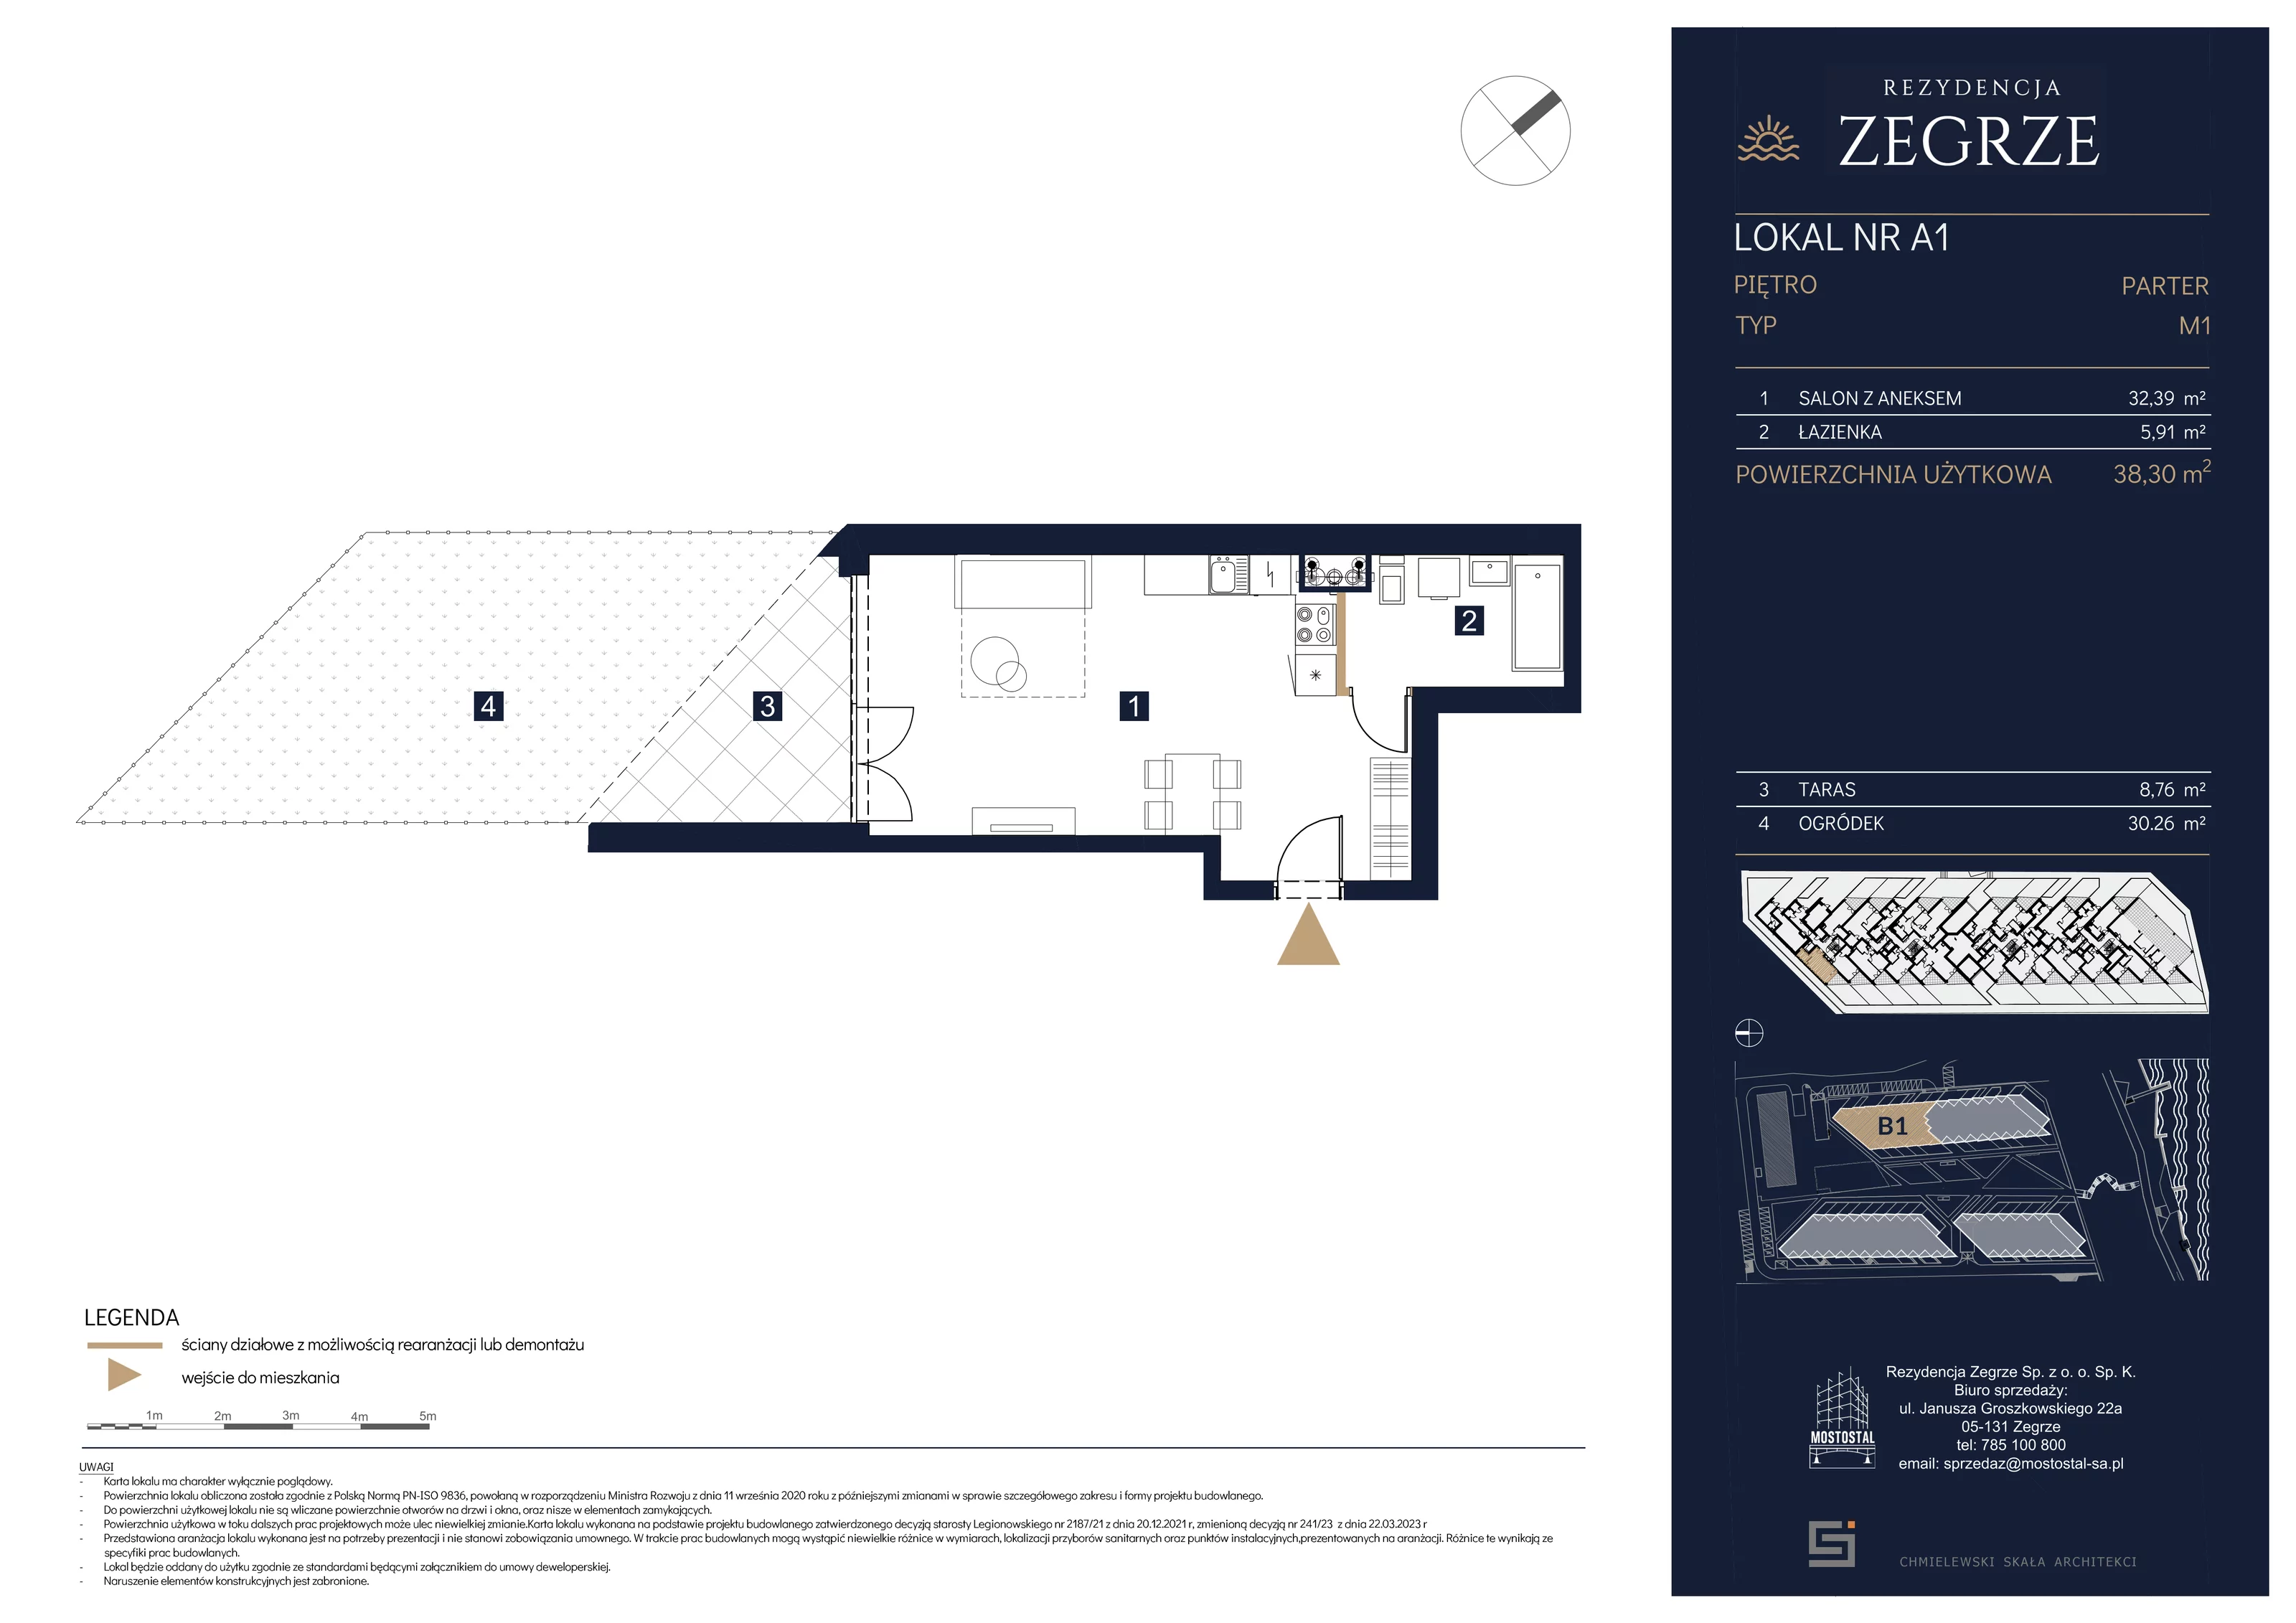 Mieszkanie 38,30 m², parter, oferta nr B1.1.A.1, Rezydencja Zegrze II, Zegrze, ul. Groszkowskiego 22A